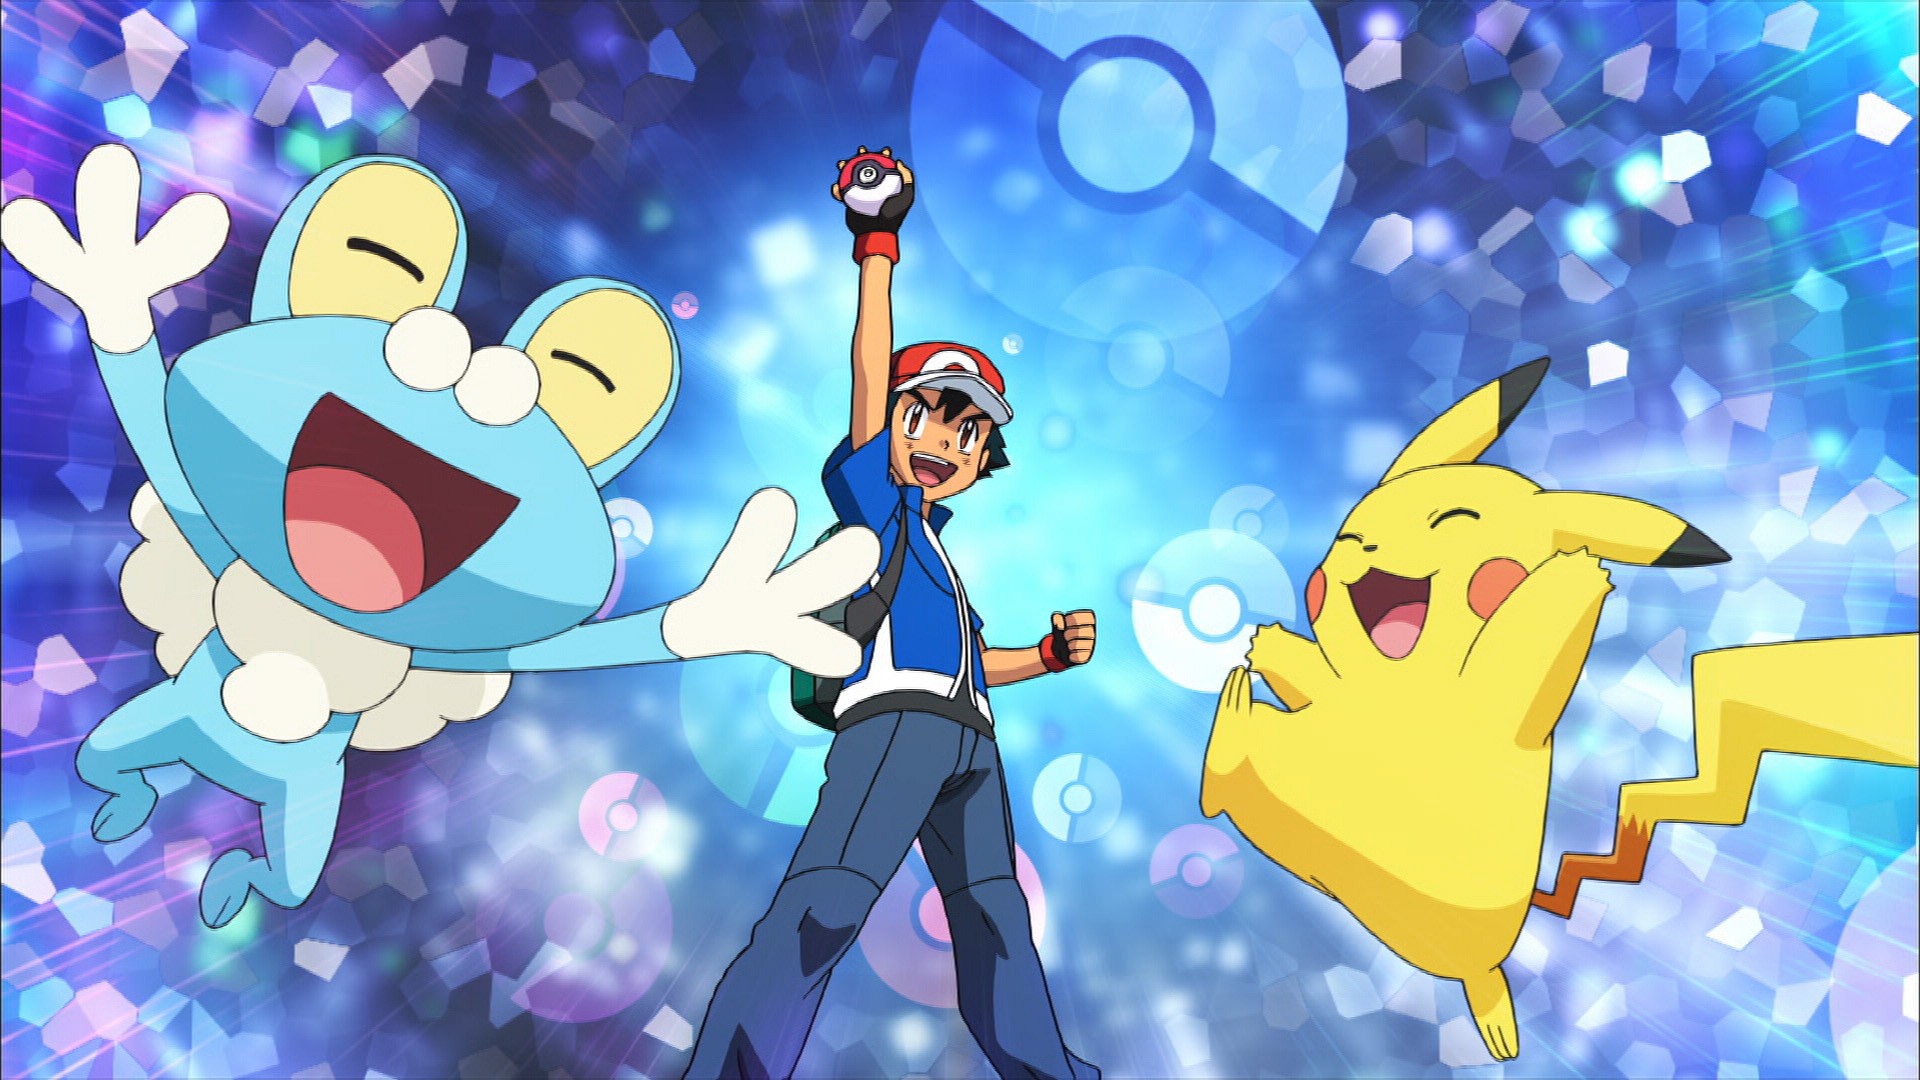 Japoneses Podem Assistir Pokémon de Graça na  Devido a